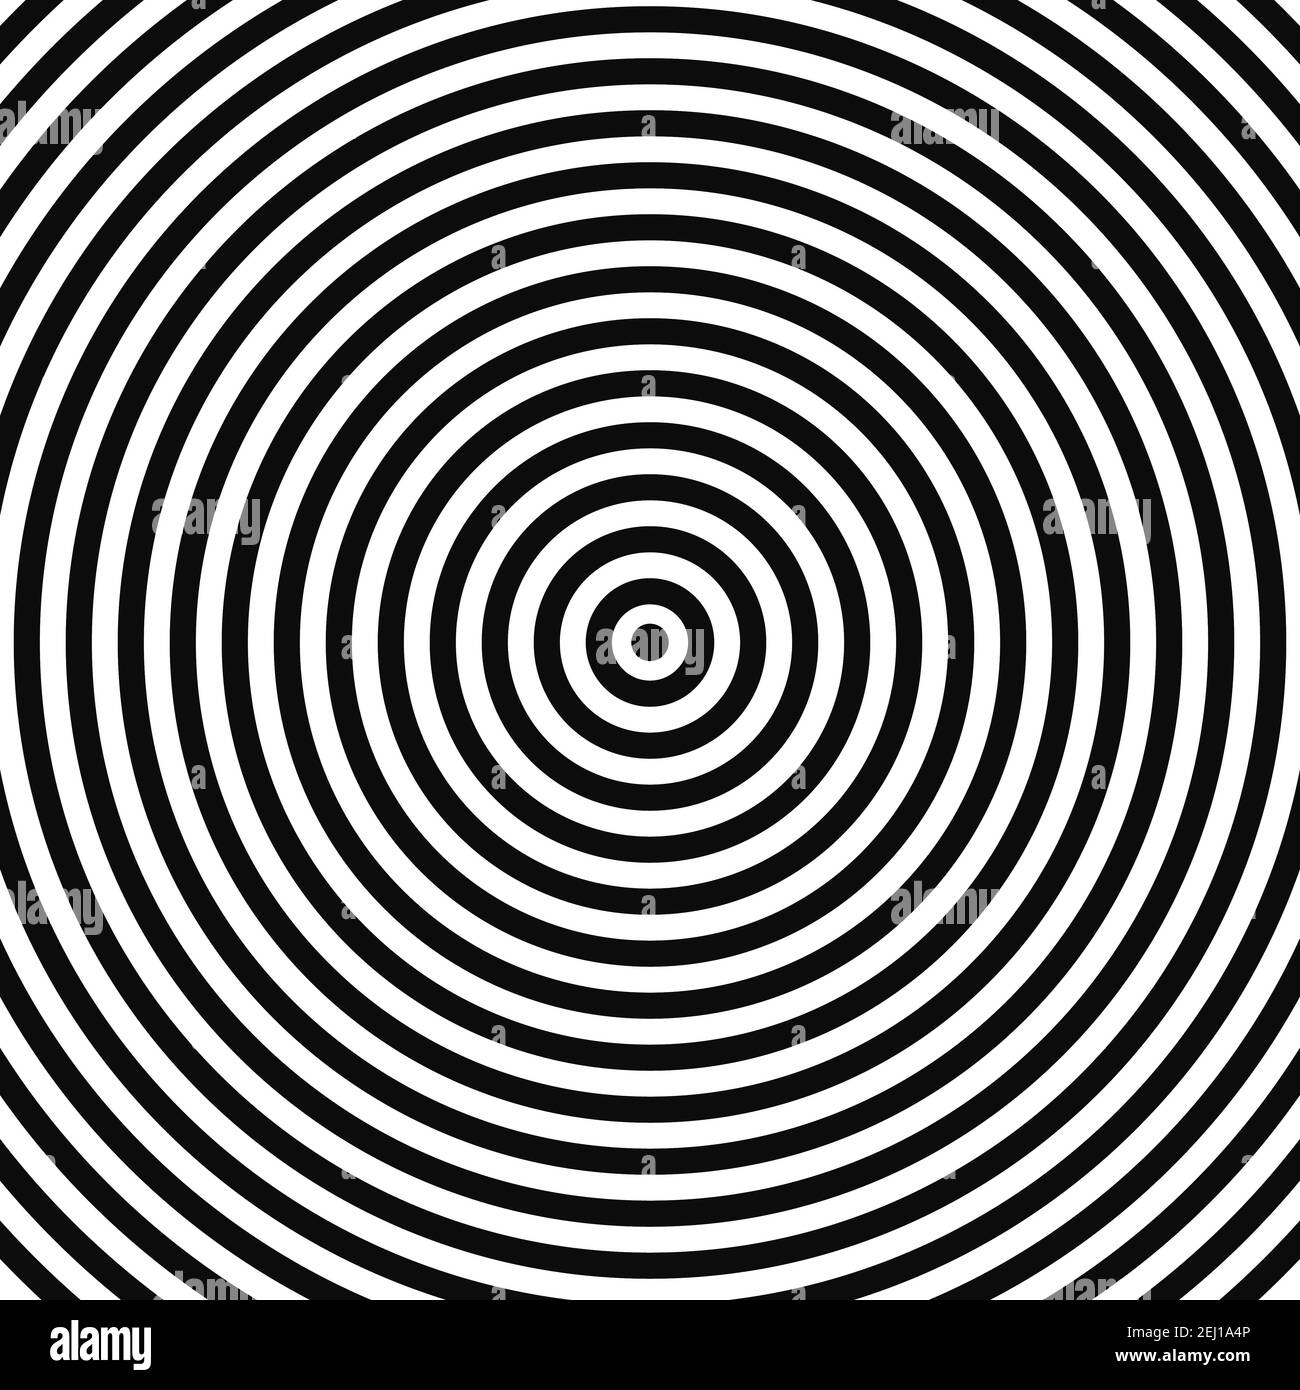 Abstrakte optische Illusion Hintergrund Vektor-Design. Psychedelisch gestreifte schwarz-weiße Kulisse. Hypnotisches Muster. Hintergrund im weißen und schwarzen Ringstil. Vektor Stock Vektor